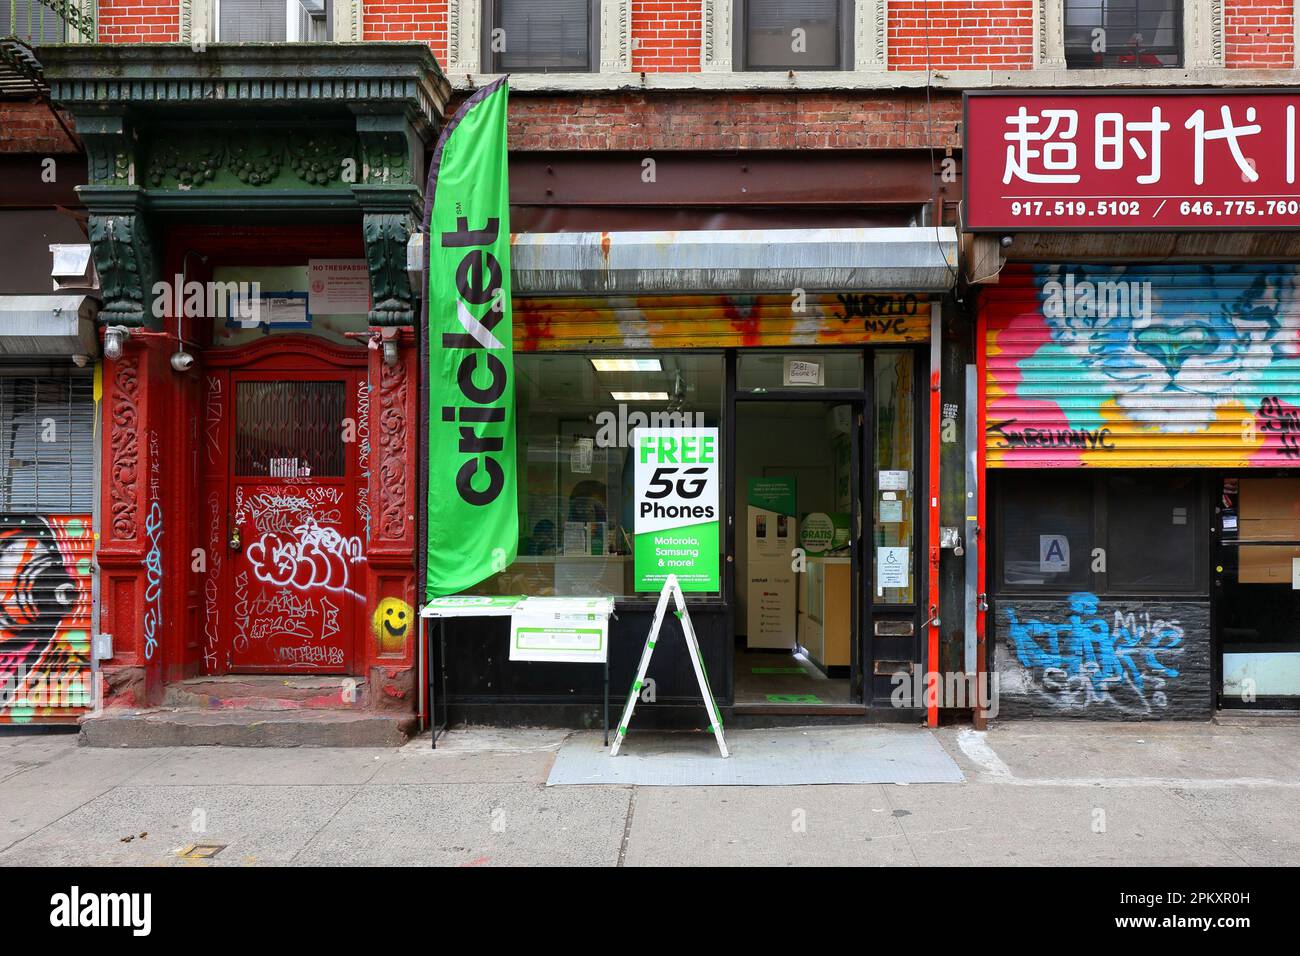 Ein Cricket Wireless Prepaid-Mobilfunkanbieter in der Lower East Side von Manhattan in New York City. Stockfoto